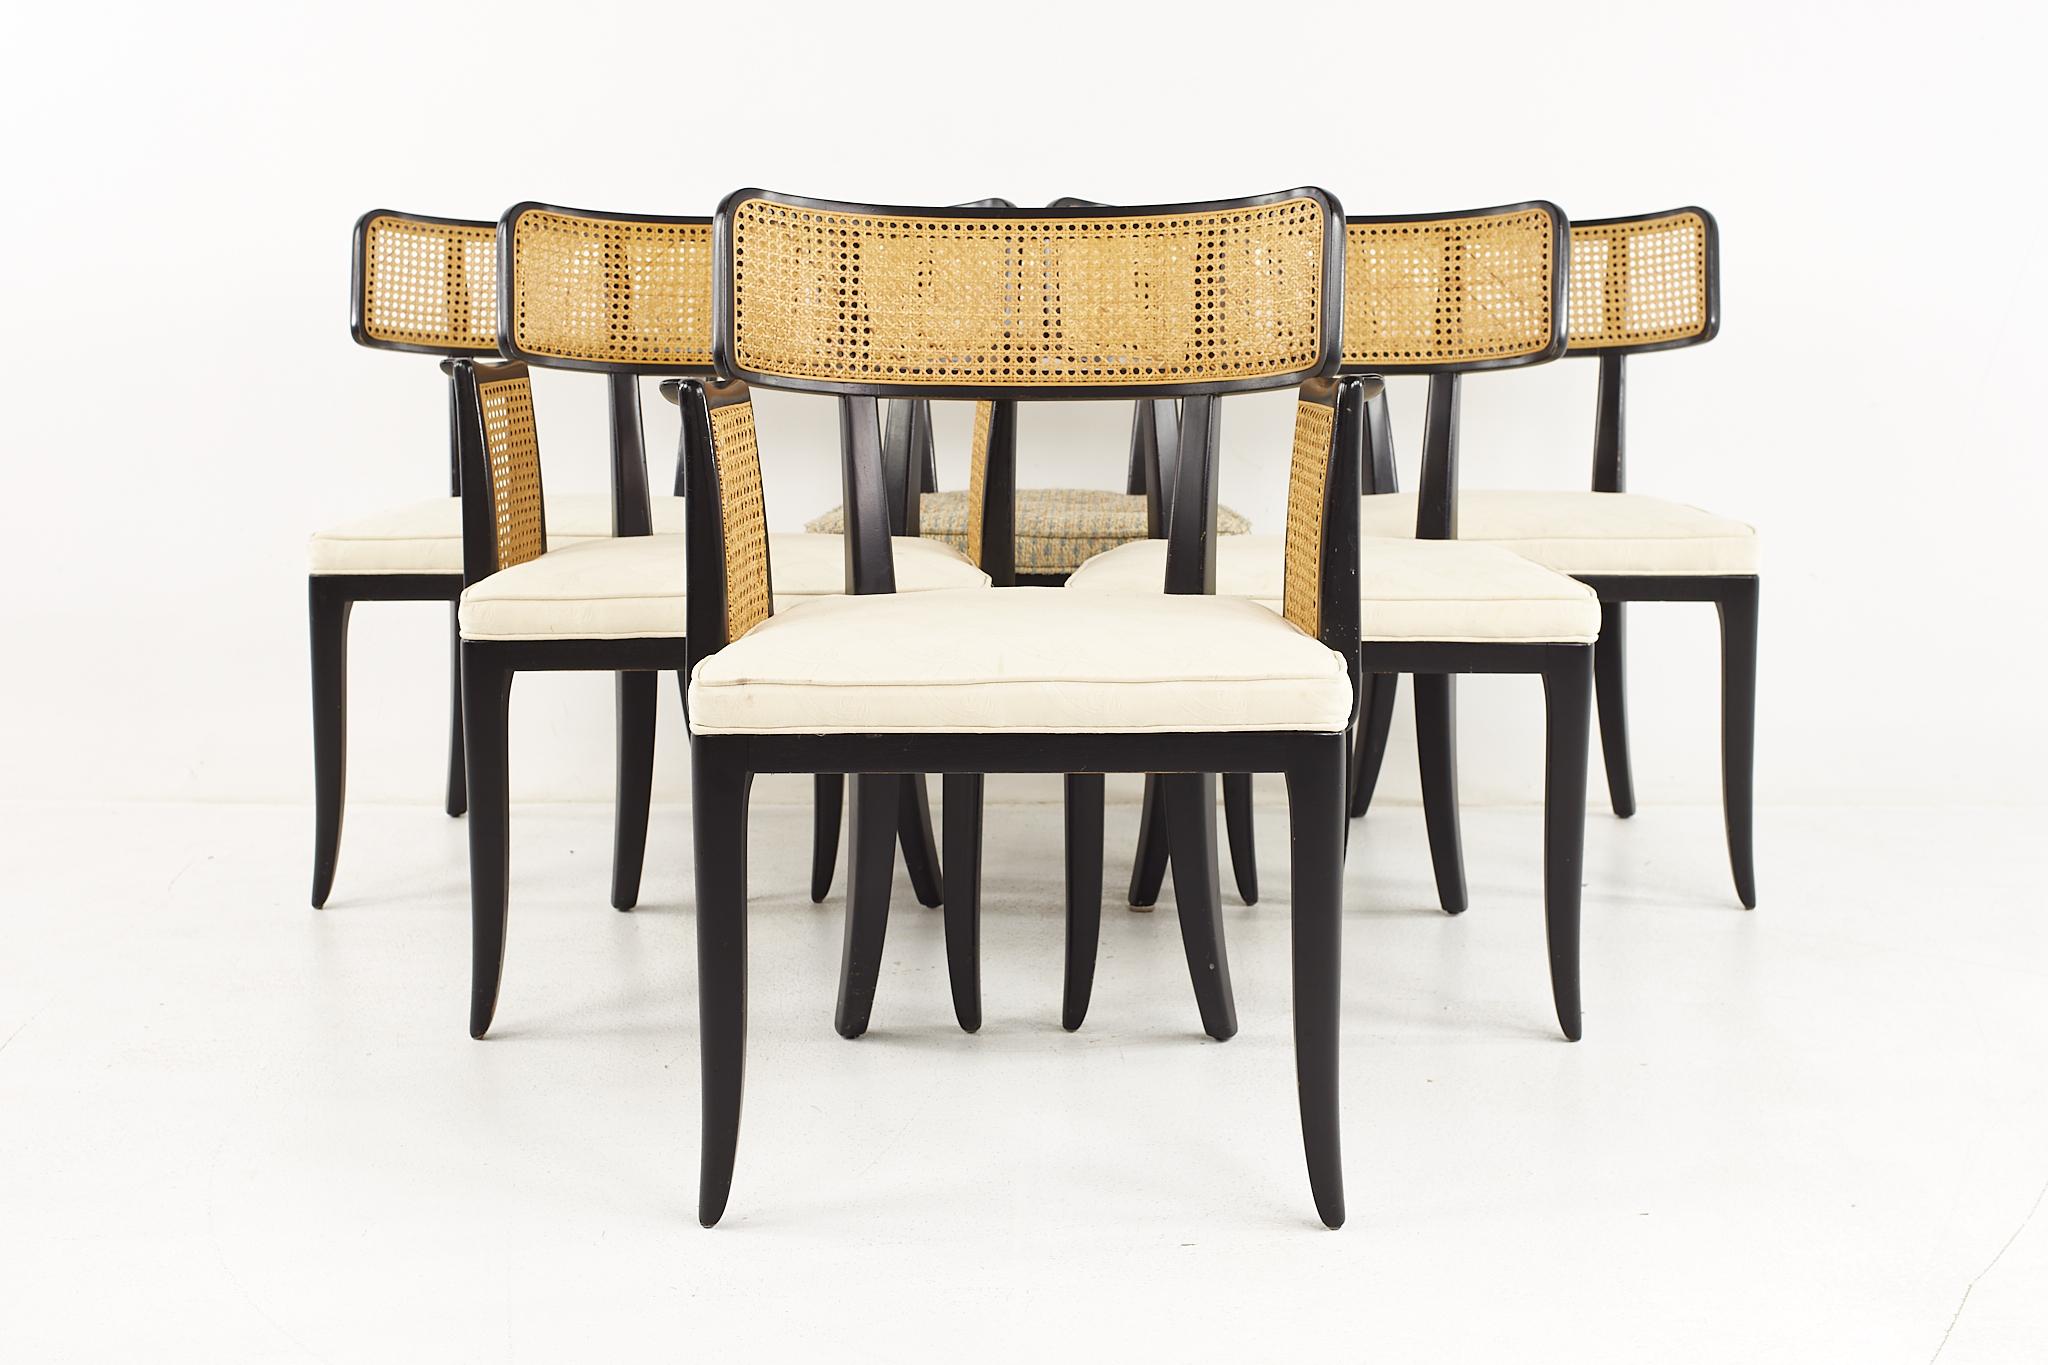 Edward Wormley for Dunbar Mid Century Dining Chairs - Set of 6

Chaque chaise latérale mesure : 22 de large x 20 de profond x 34 de haut, avec une hauteur d'assise de 18 pouces.
Chaque fauteuil mesure : 25 large x 21 profond x 34 haut, avec une